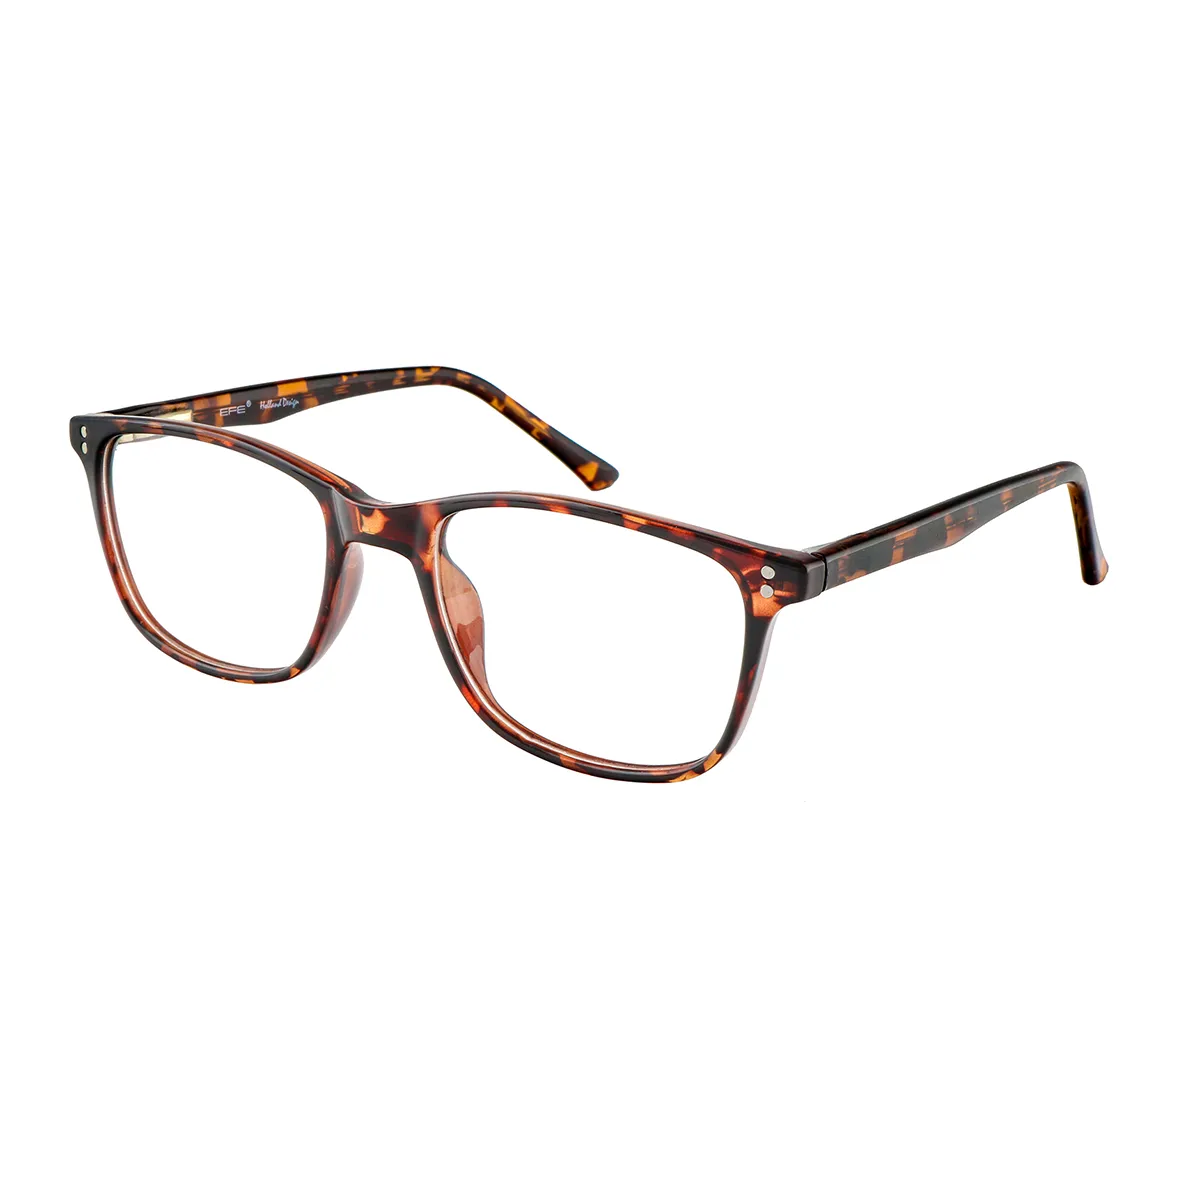 Herron - Square Tortoiseshell Glasses for Men & Women - EFE